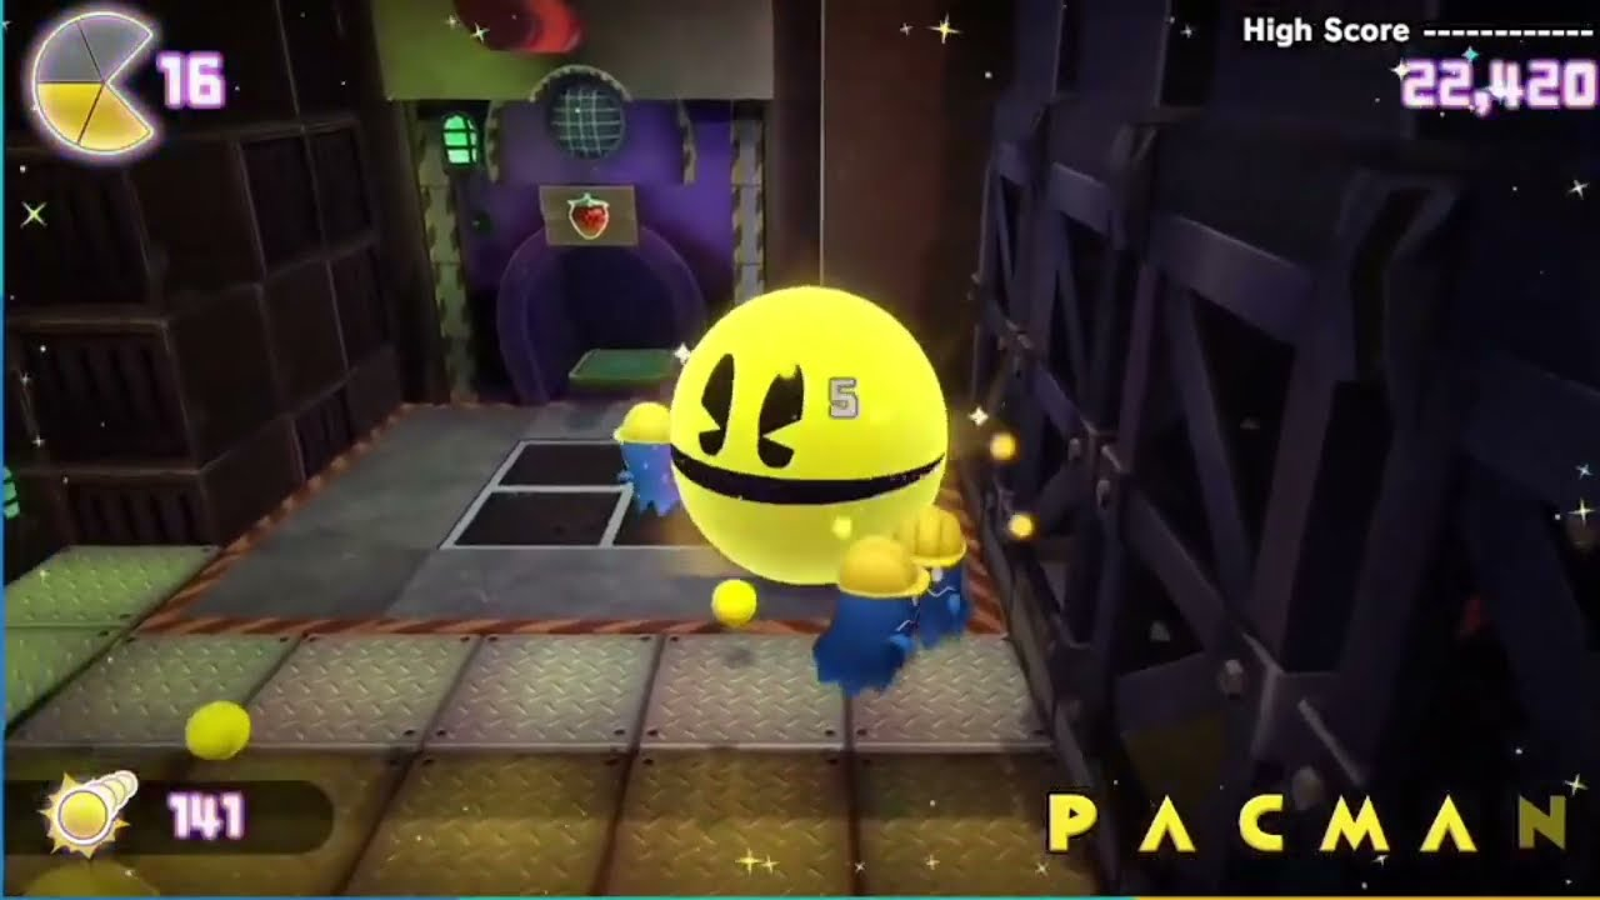 Pac-Man World Re-Pac chega em agosto com gráficos melhorados